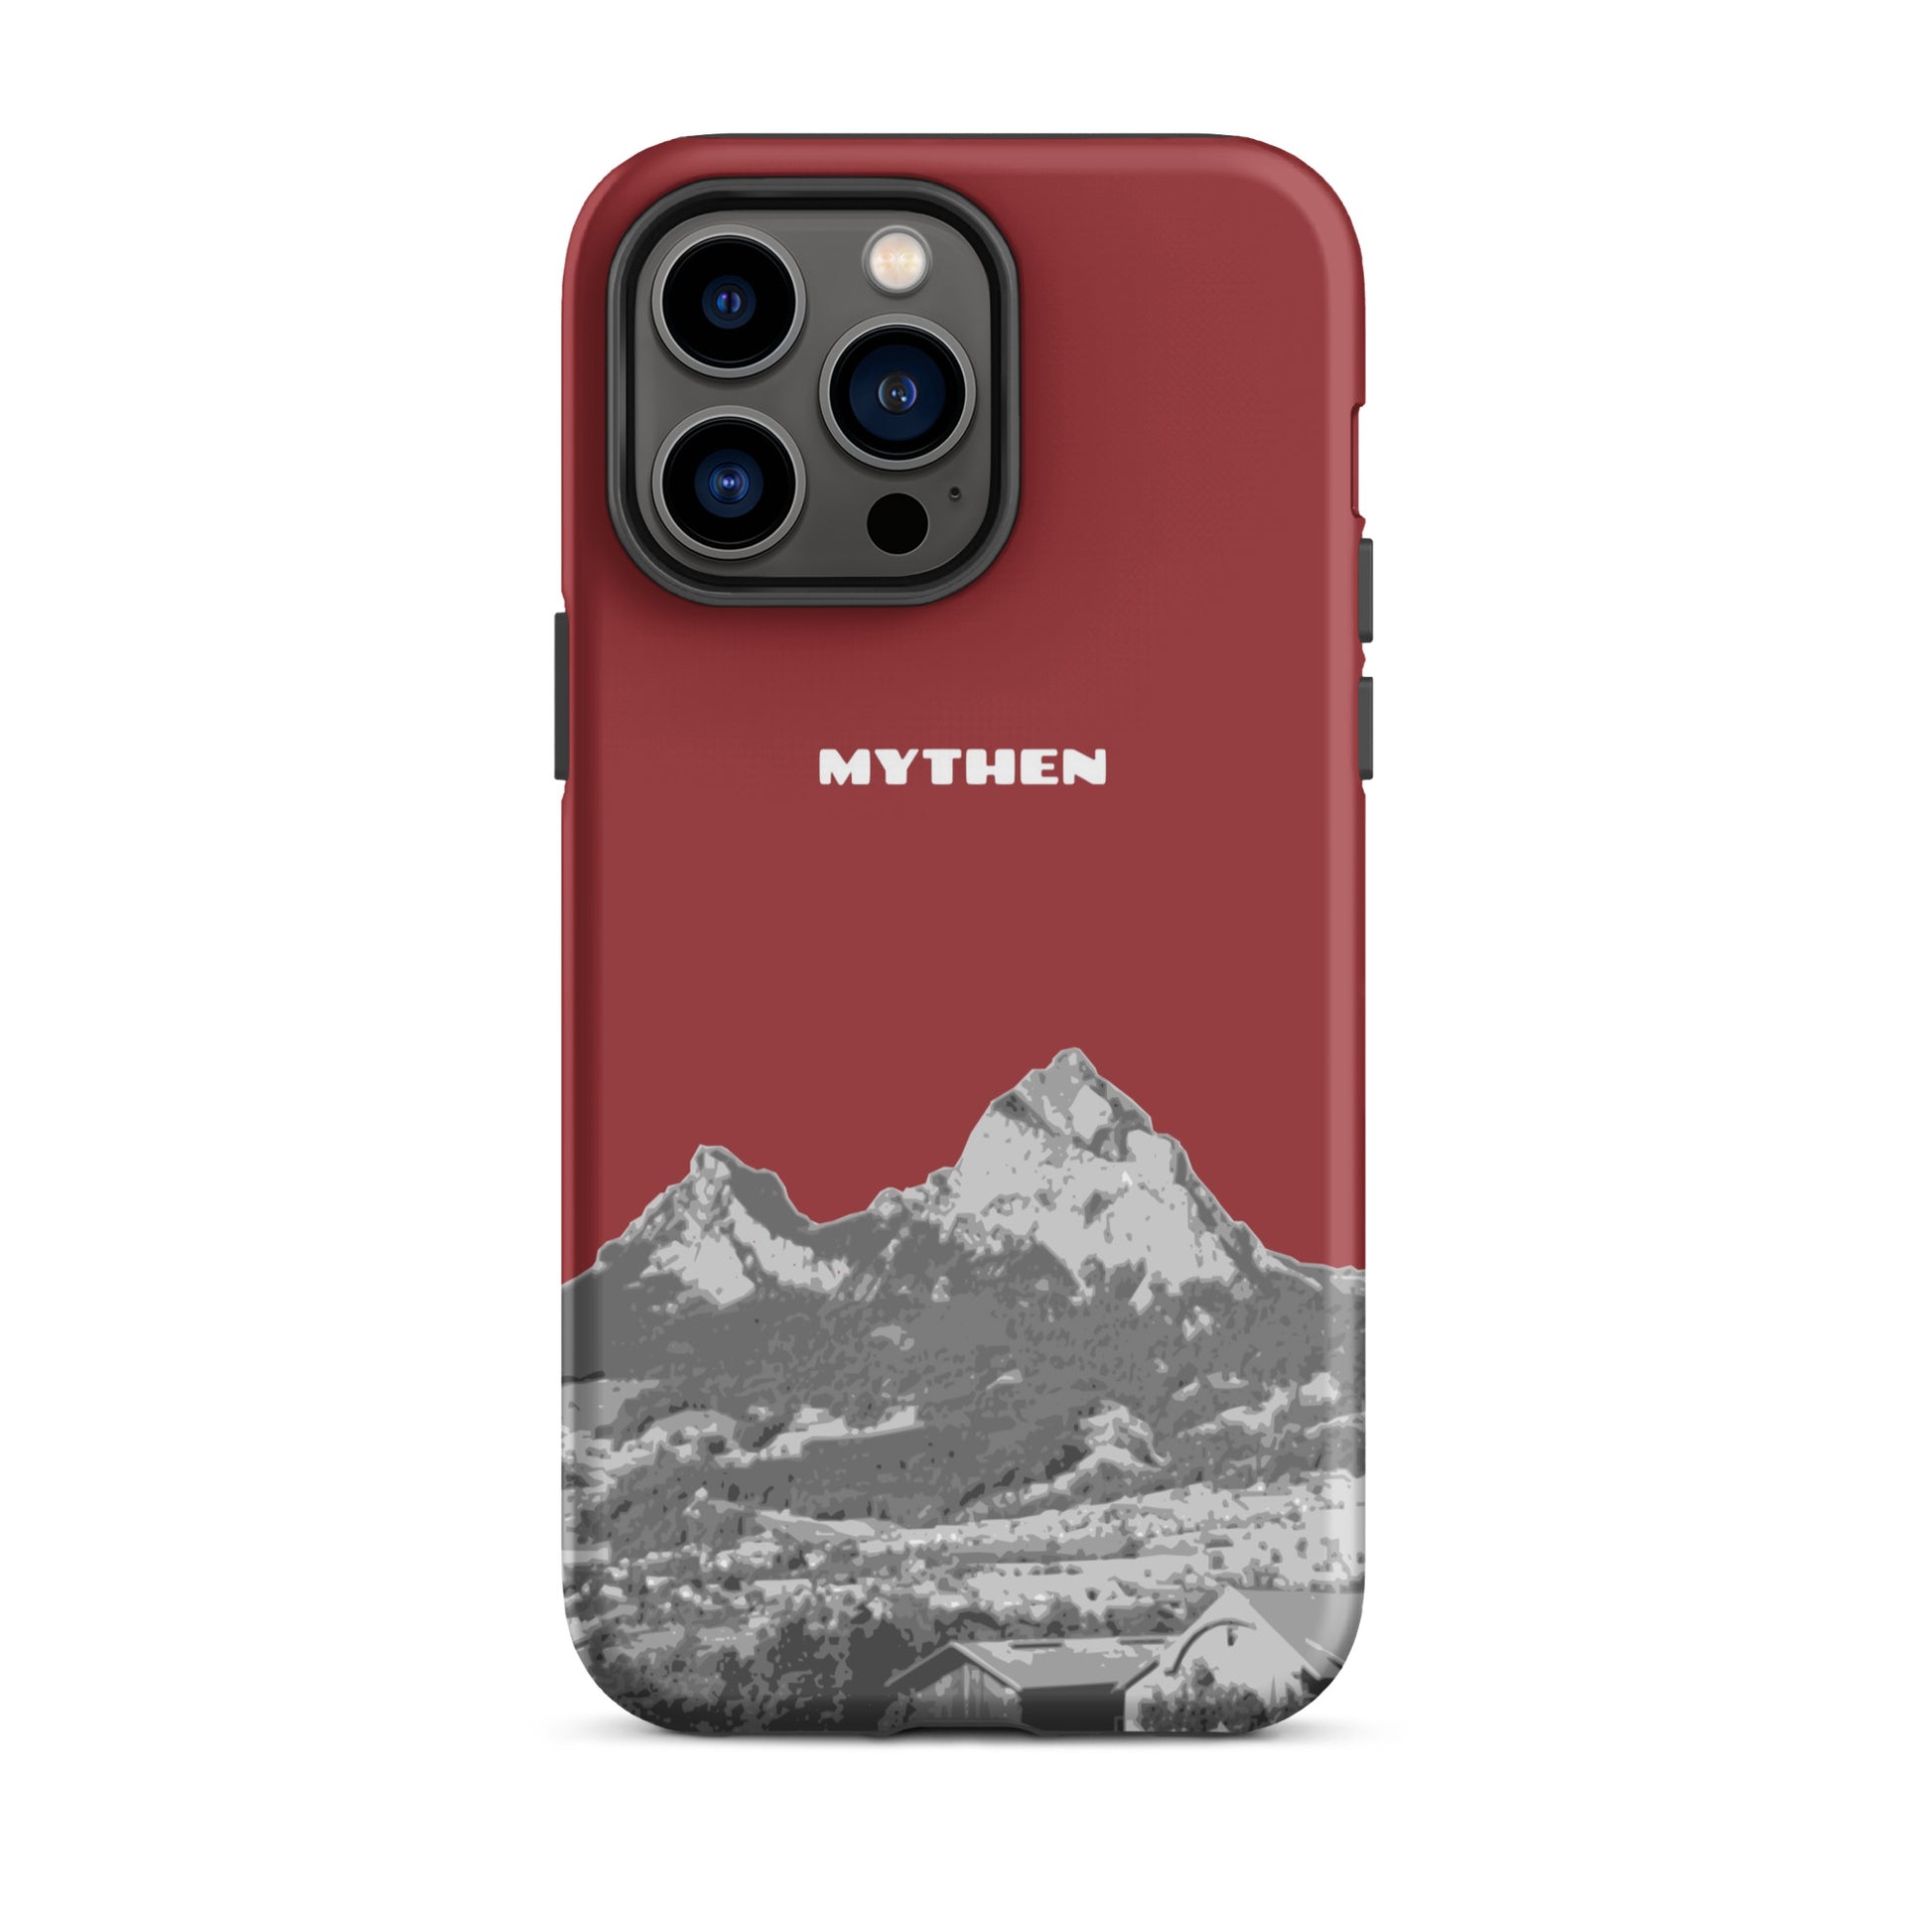 Hülle für das iPhone 14 Pro Max von Apple in der Farbe Rot, die den Grossen Mythen und den Kleinen Mythen bei Schwyz zeigt. 